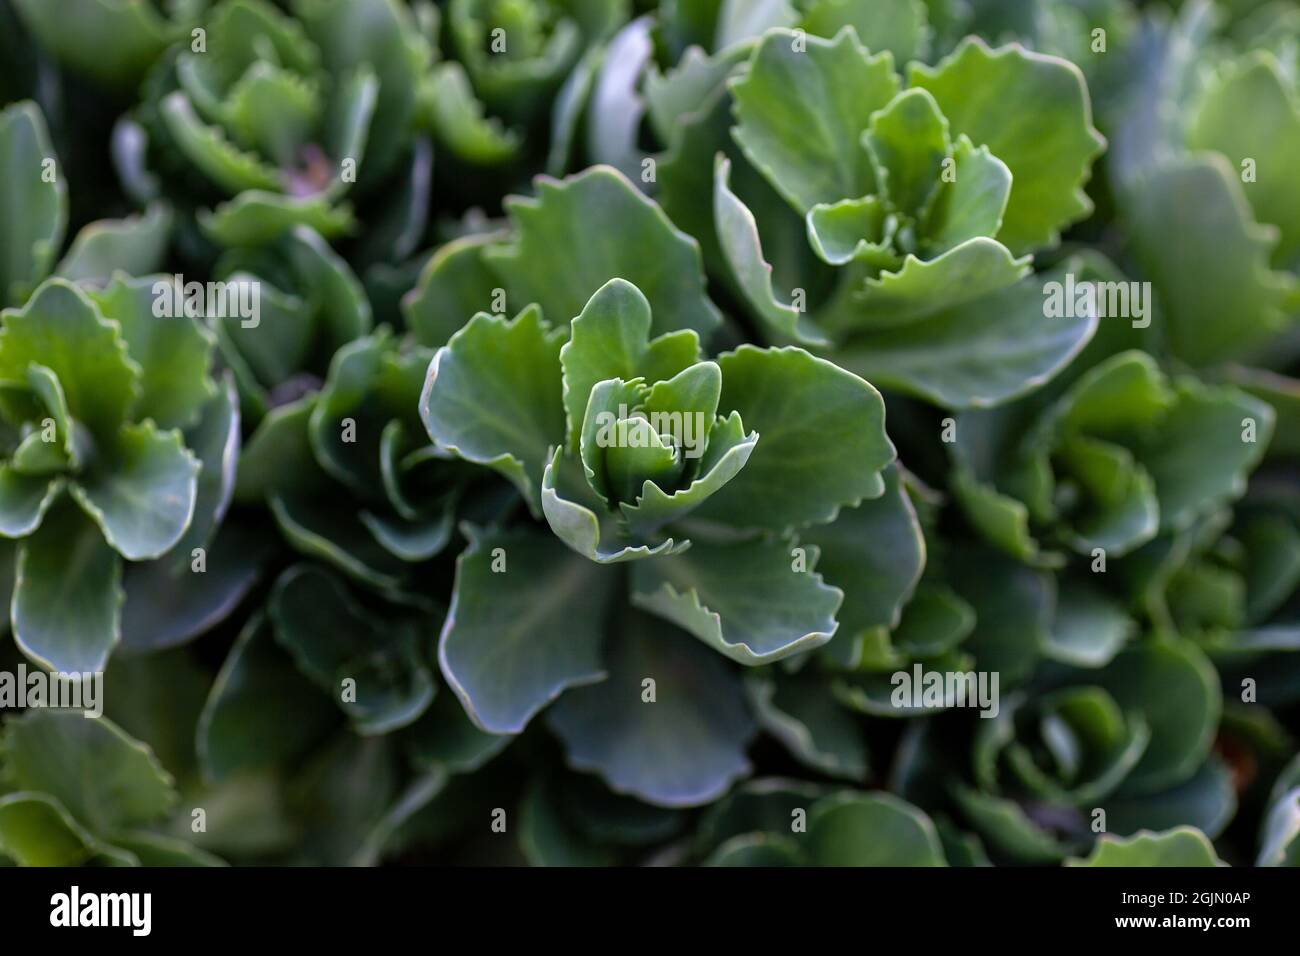 Green sedum close-up. Beautiful leaves with uneven edges of sedum bushes on green background, Sedum telephium Stock Photo